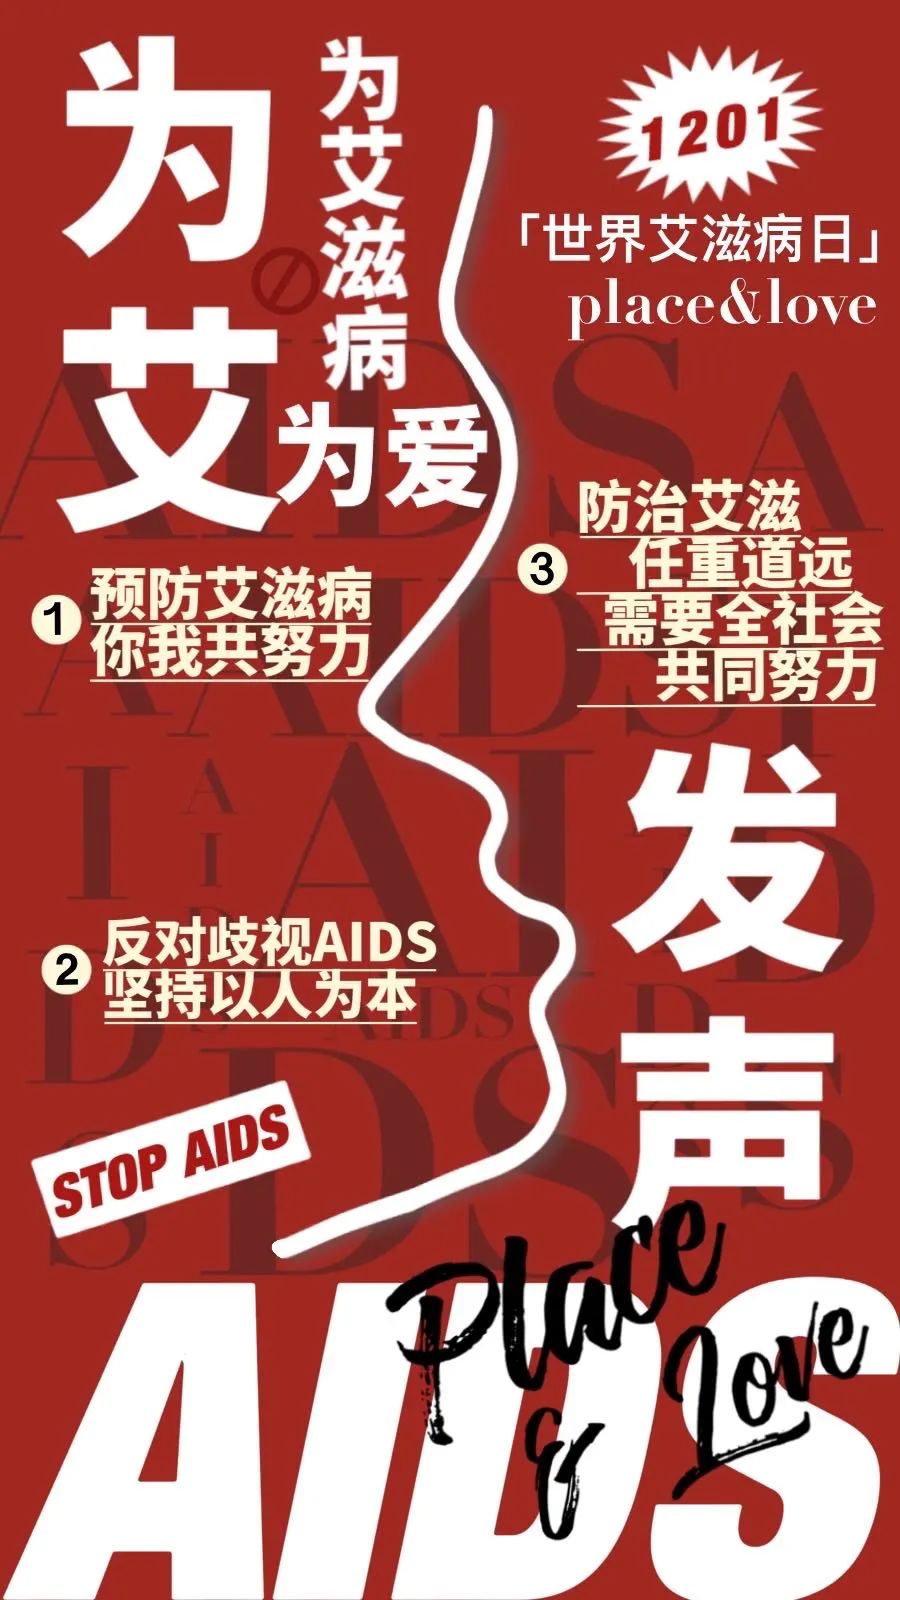 12·1系列活动丨高校艾滋病防治公益海报设计大赛作品展